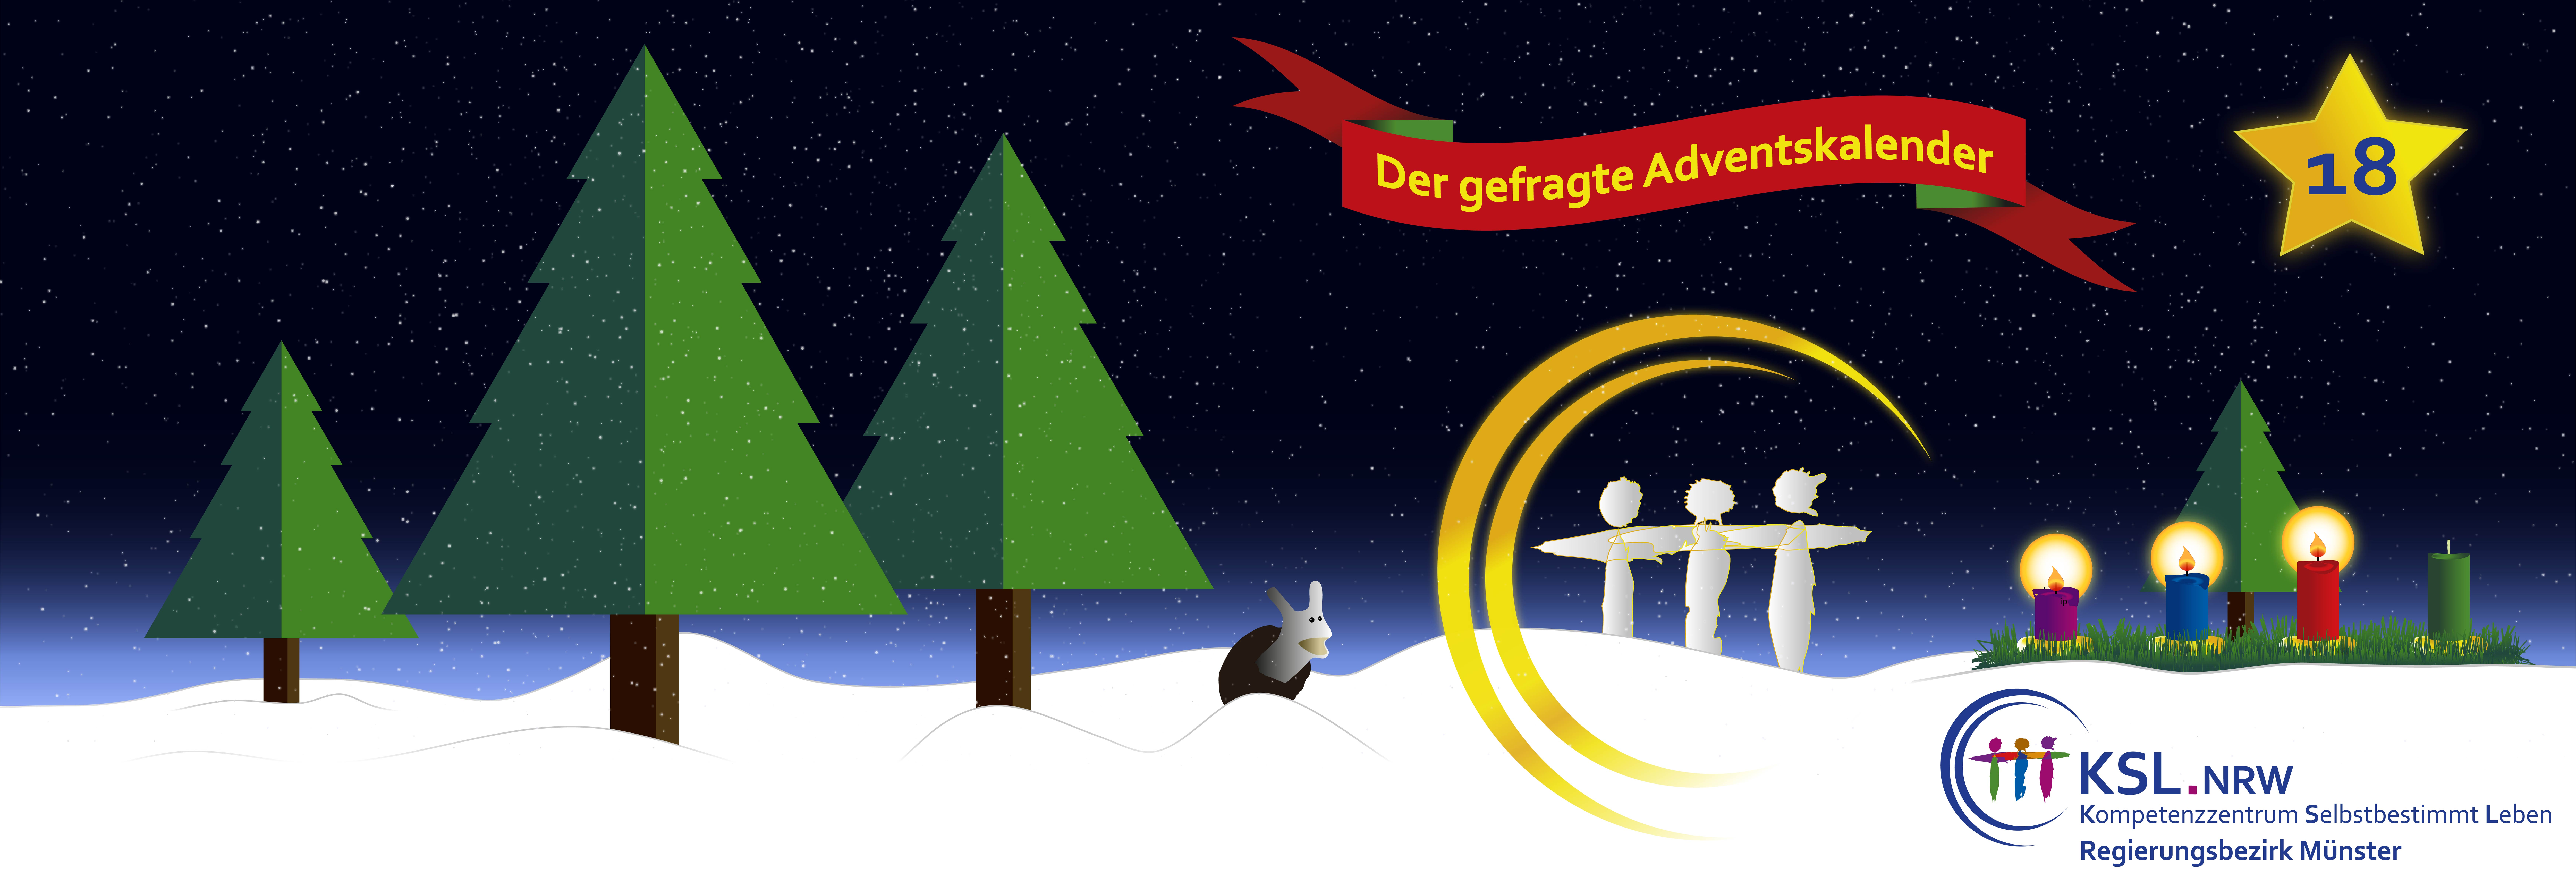 Der gefragte Adventskalender - KSL Münster - weihnachtlicher Hintergrund - vier Tannenbäume - ein Stern mit der Nummer 18 - ein Adventskranz mit vier Kerzen